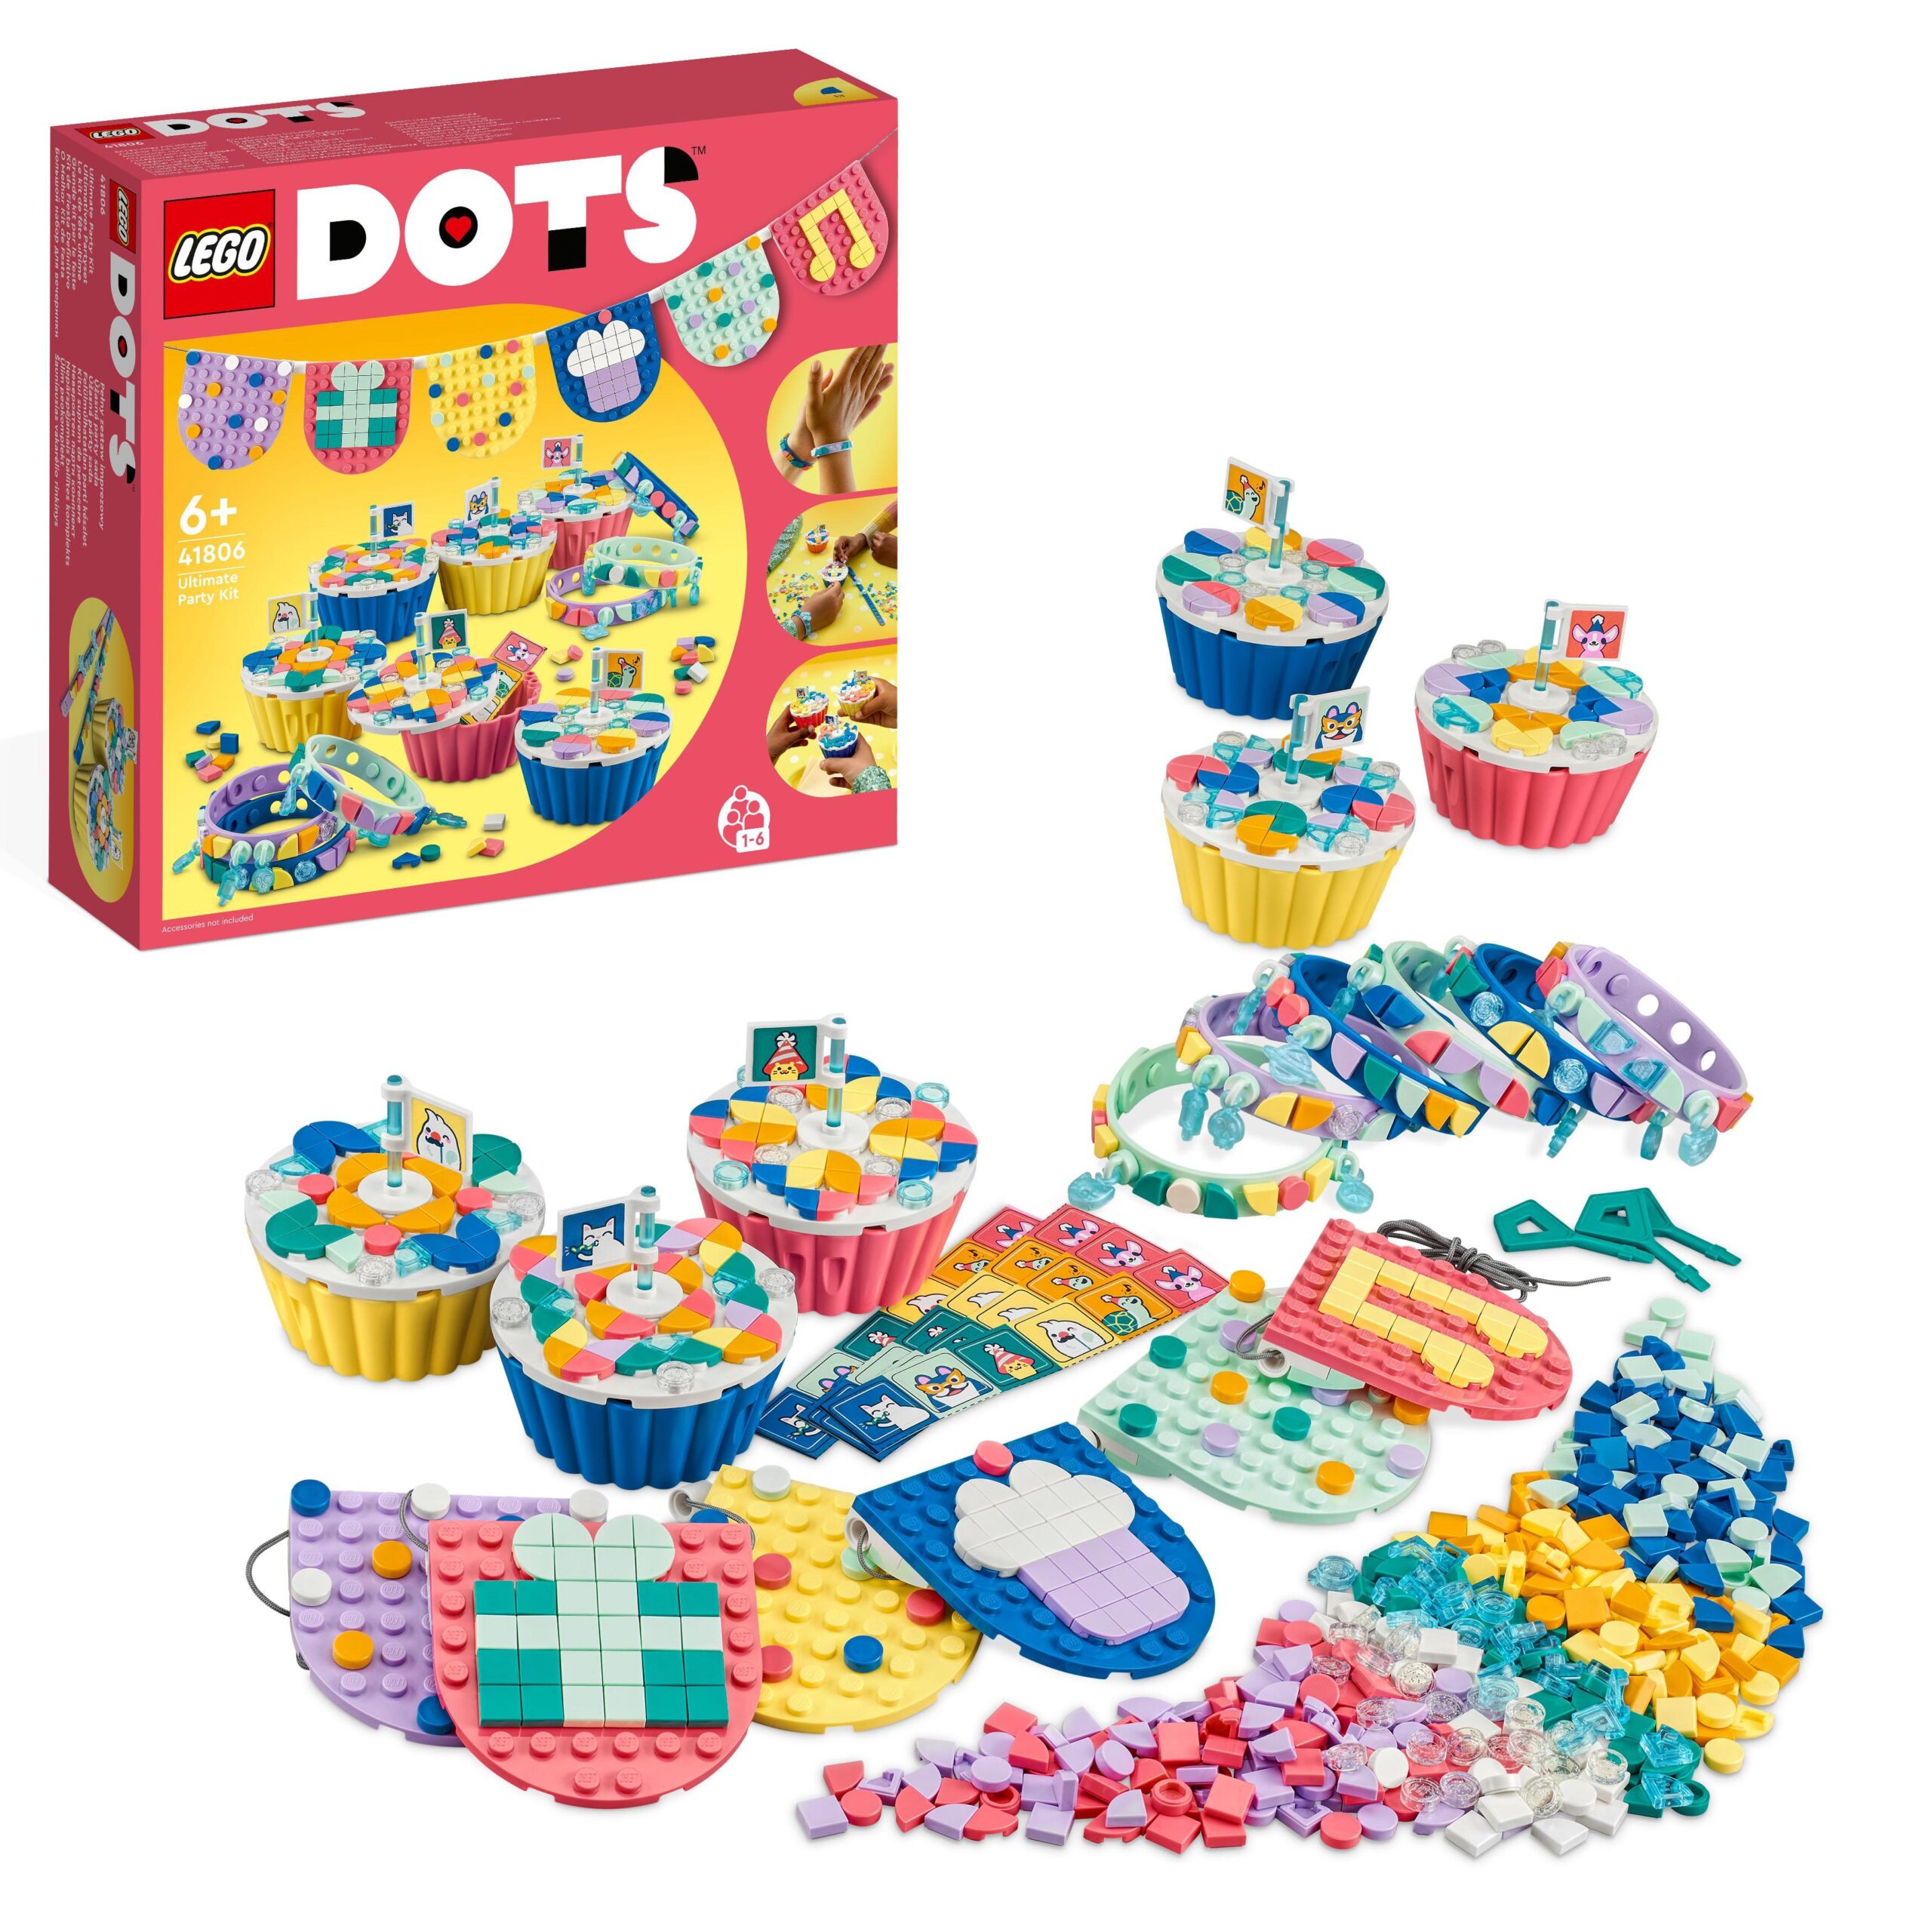 Lego dots 41806 grande kit per le feste, giochi festa compleanno bambini fai da te con cupcake, braccialetti e festoni - DOTS